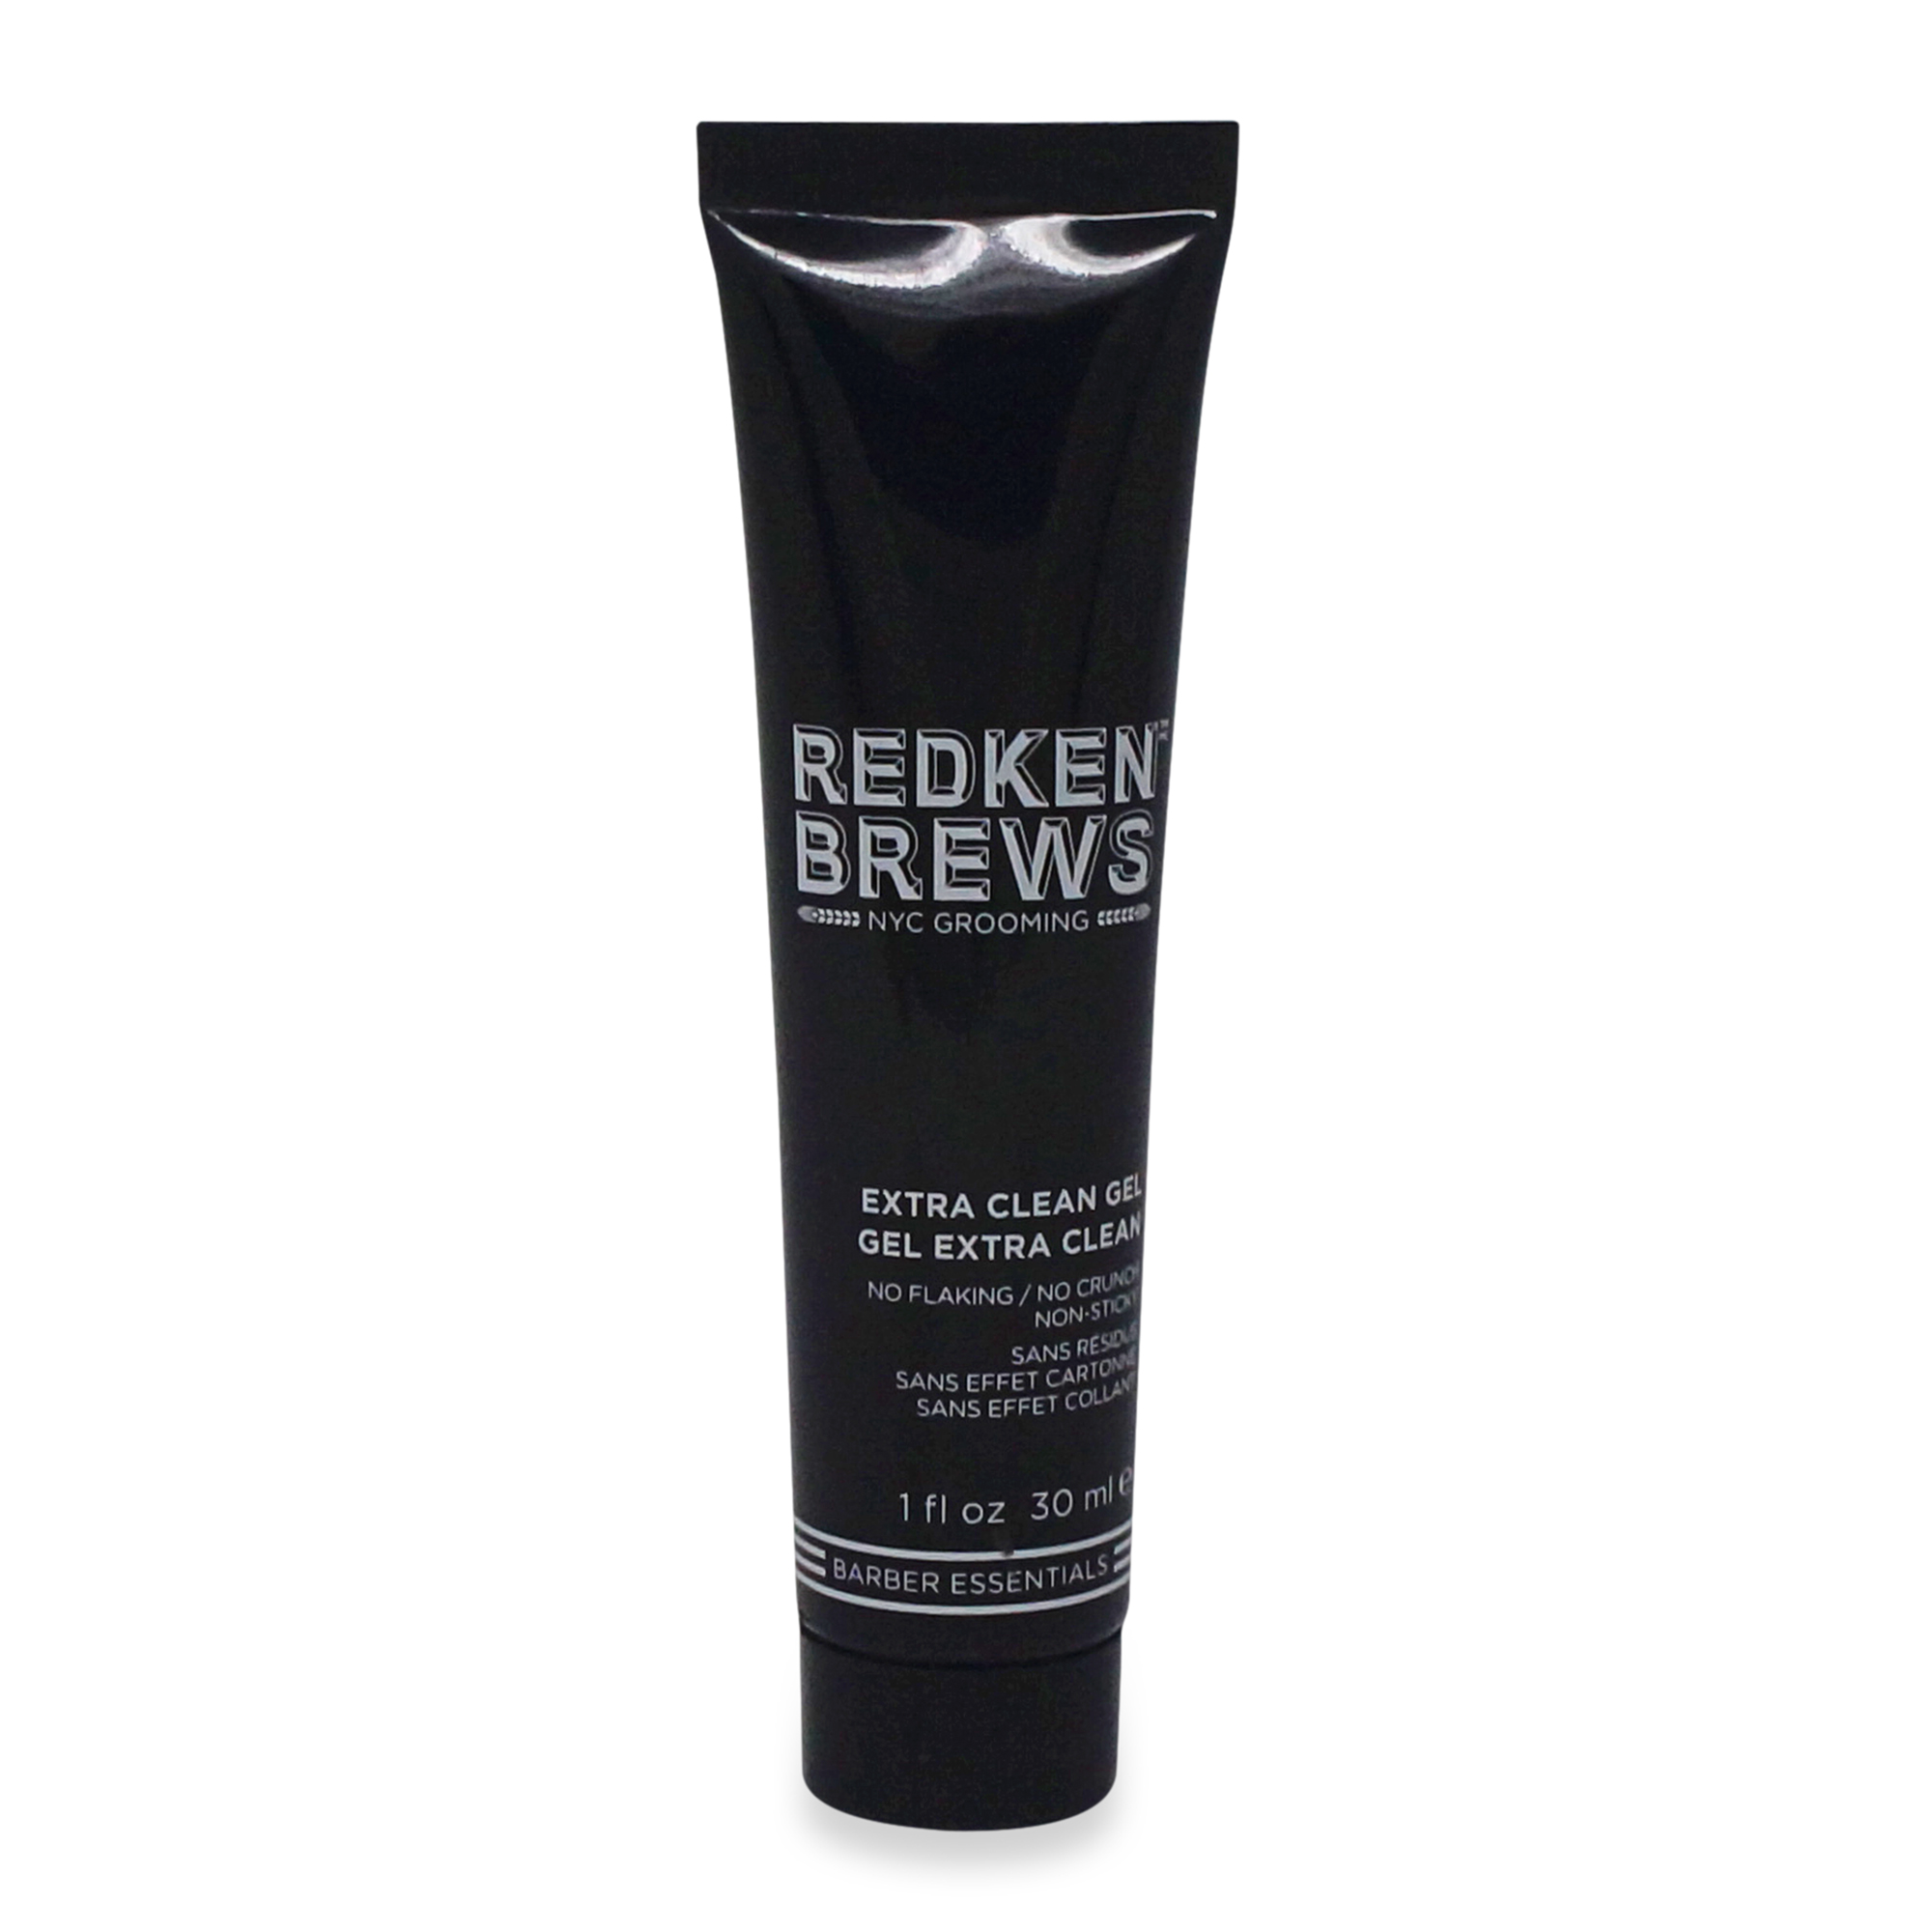 Redken Brews Extra Clean Hair Gel, 1 Oz. - image 1 of 2